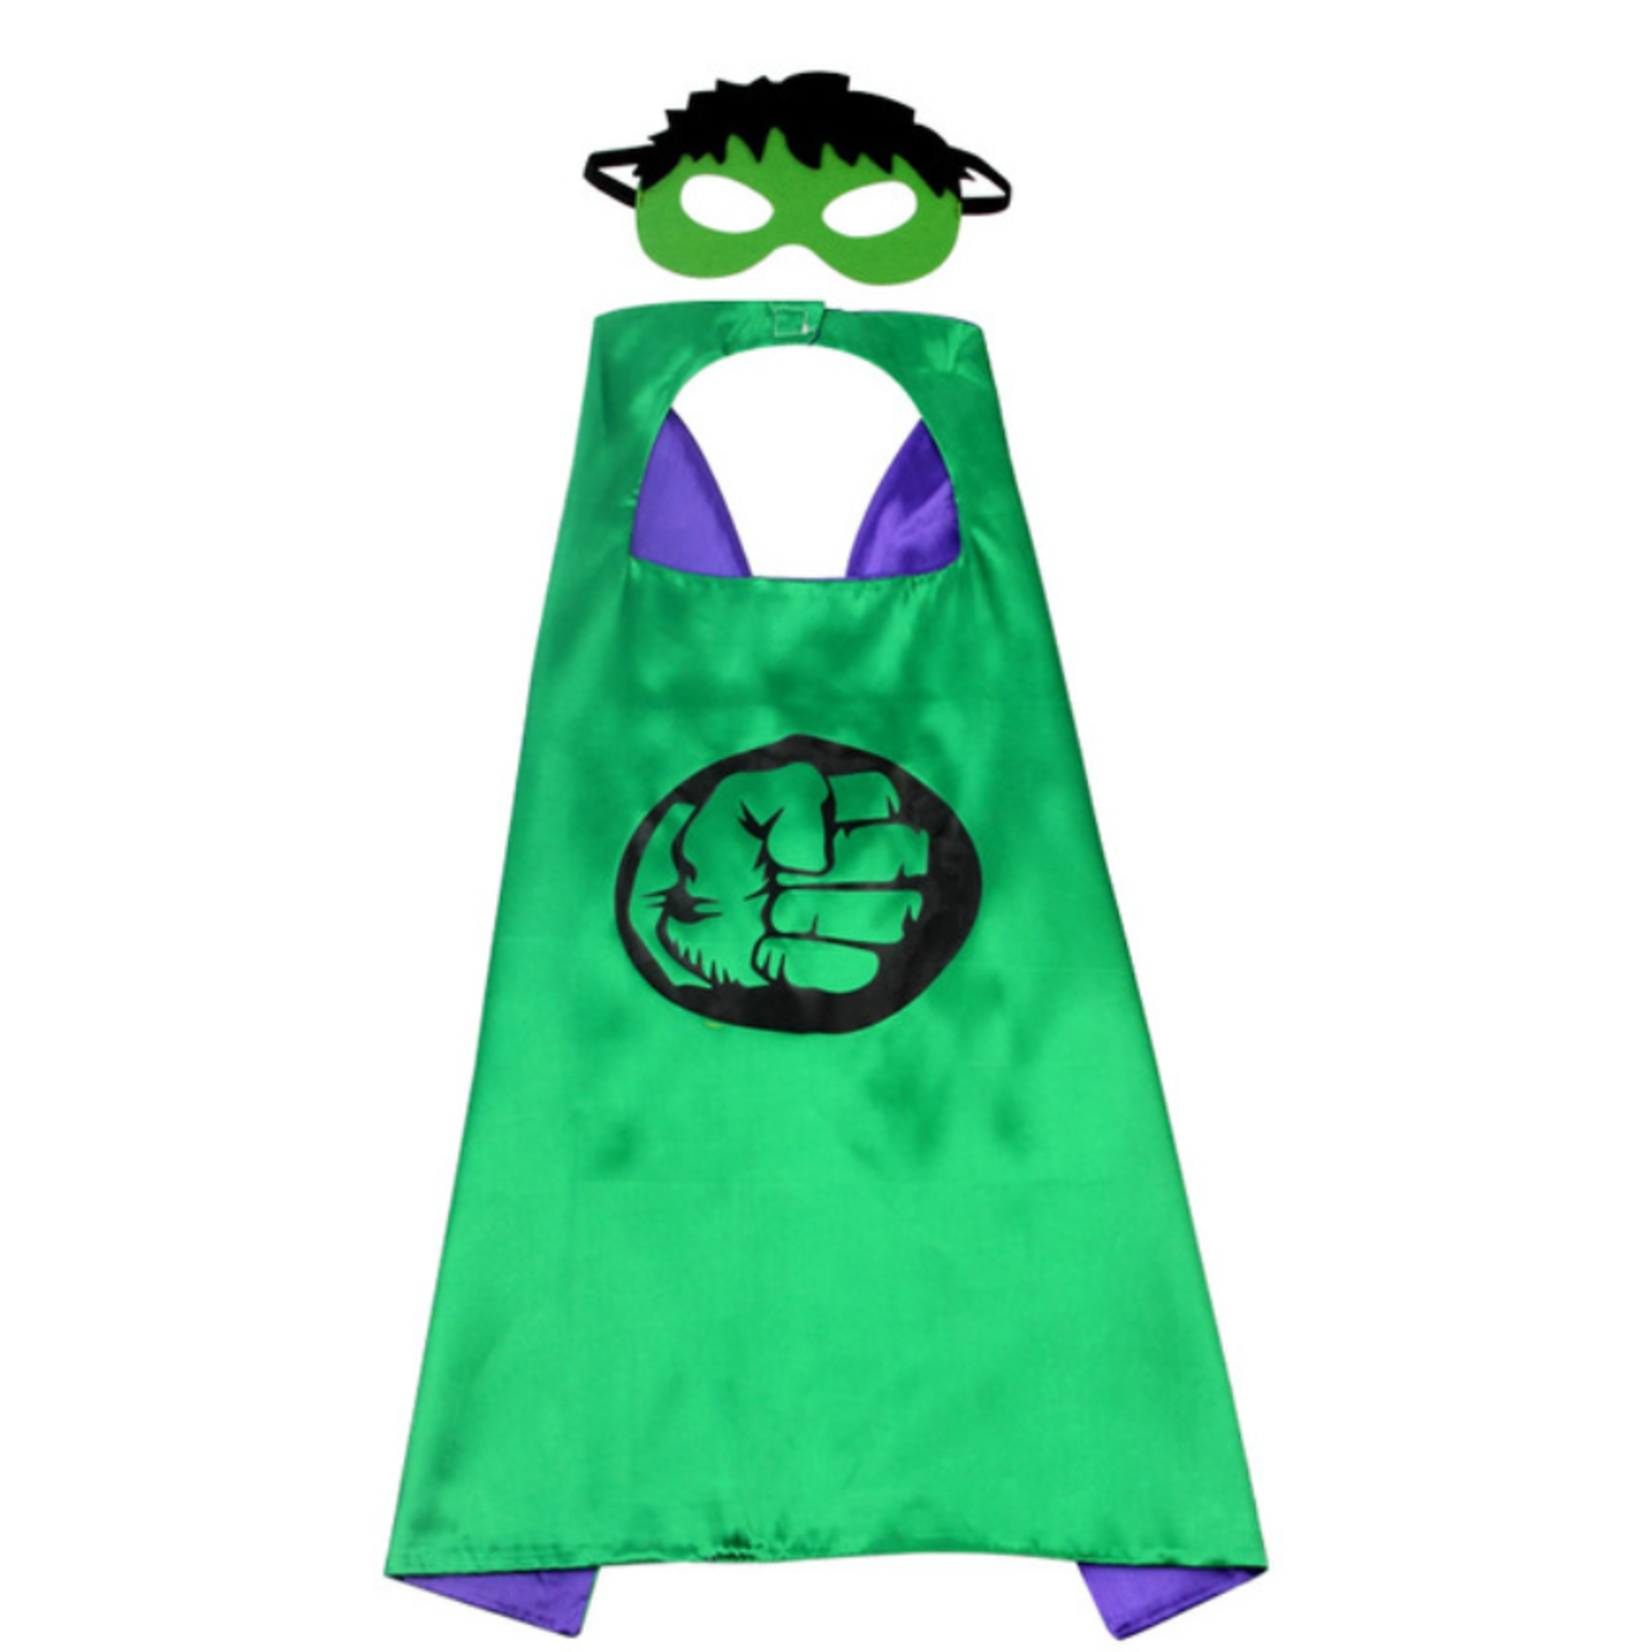 Jobber Toys - Hulk cape + masker - Kleur groen - Superheld cape en masker - Kinderen verkleedkleding- Superheld verkleedoutfit - Superheld thema – Hulk